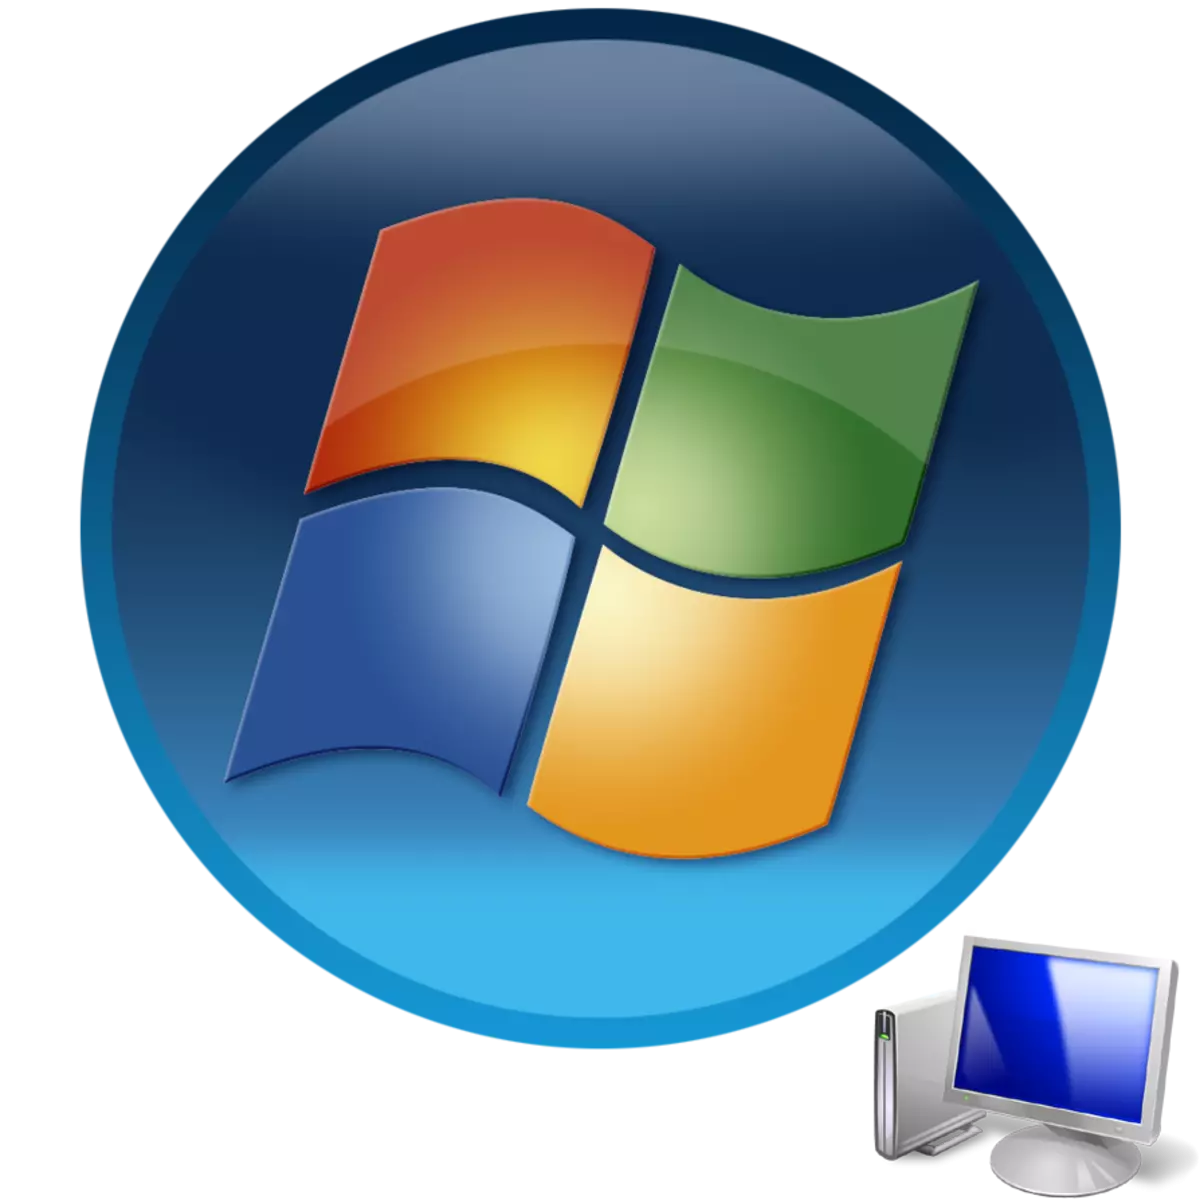 使用Windows 7操作系统启动计算机